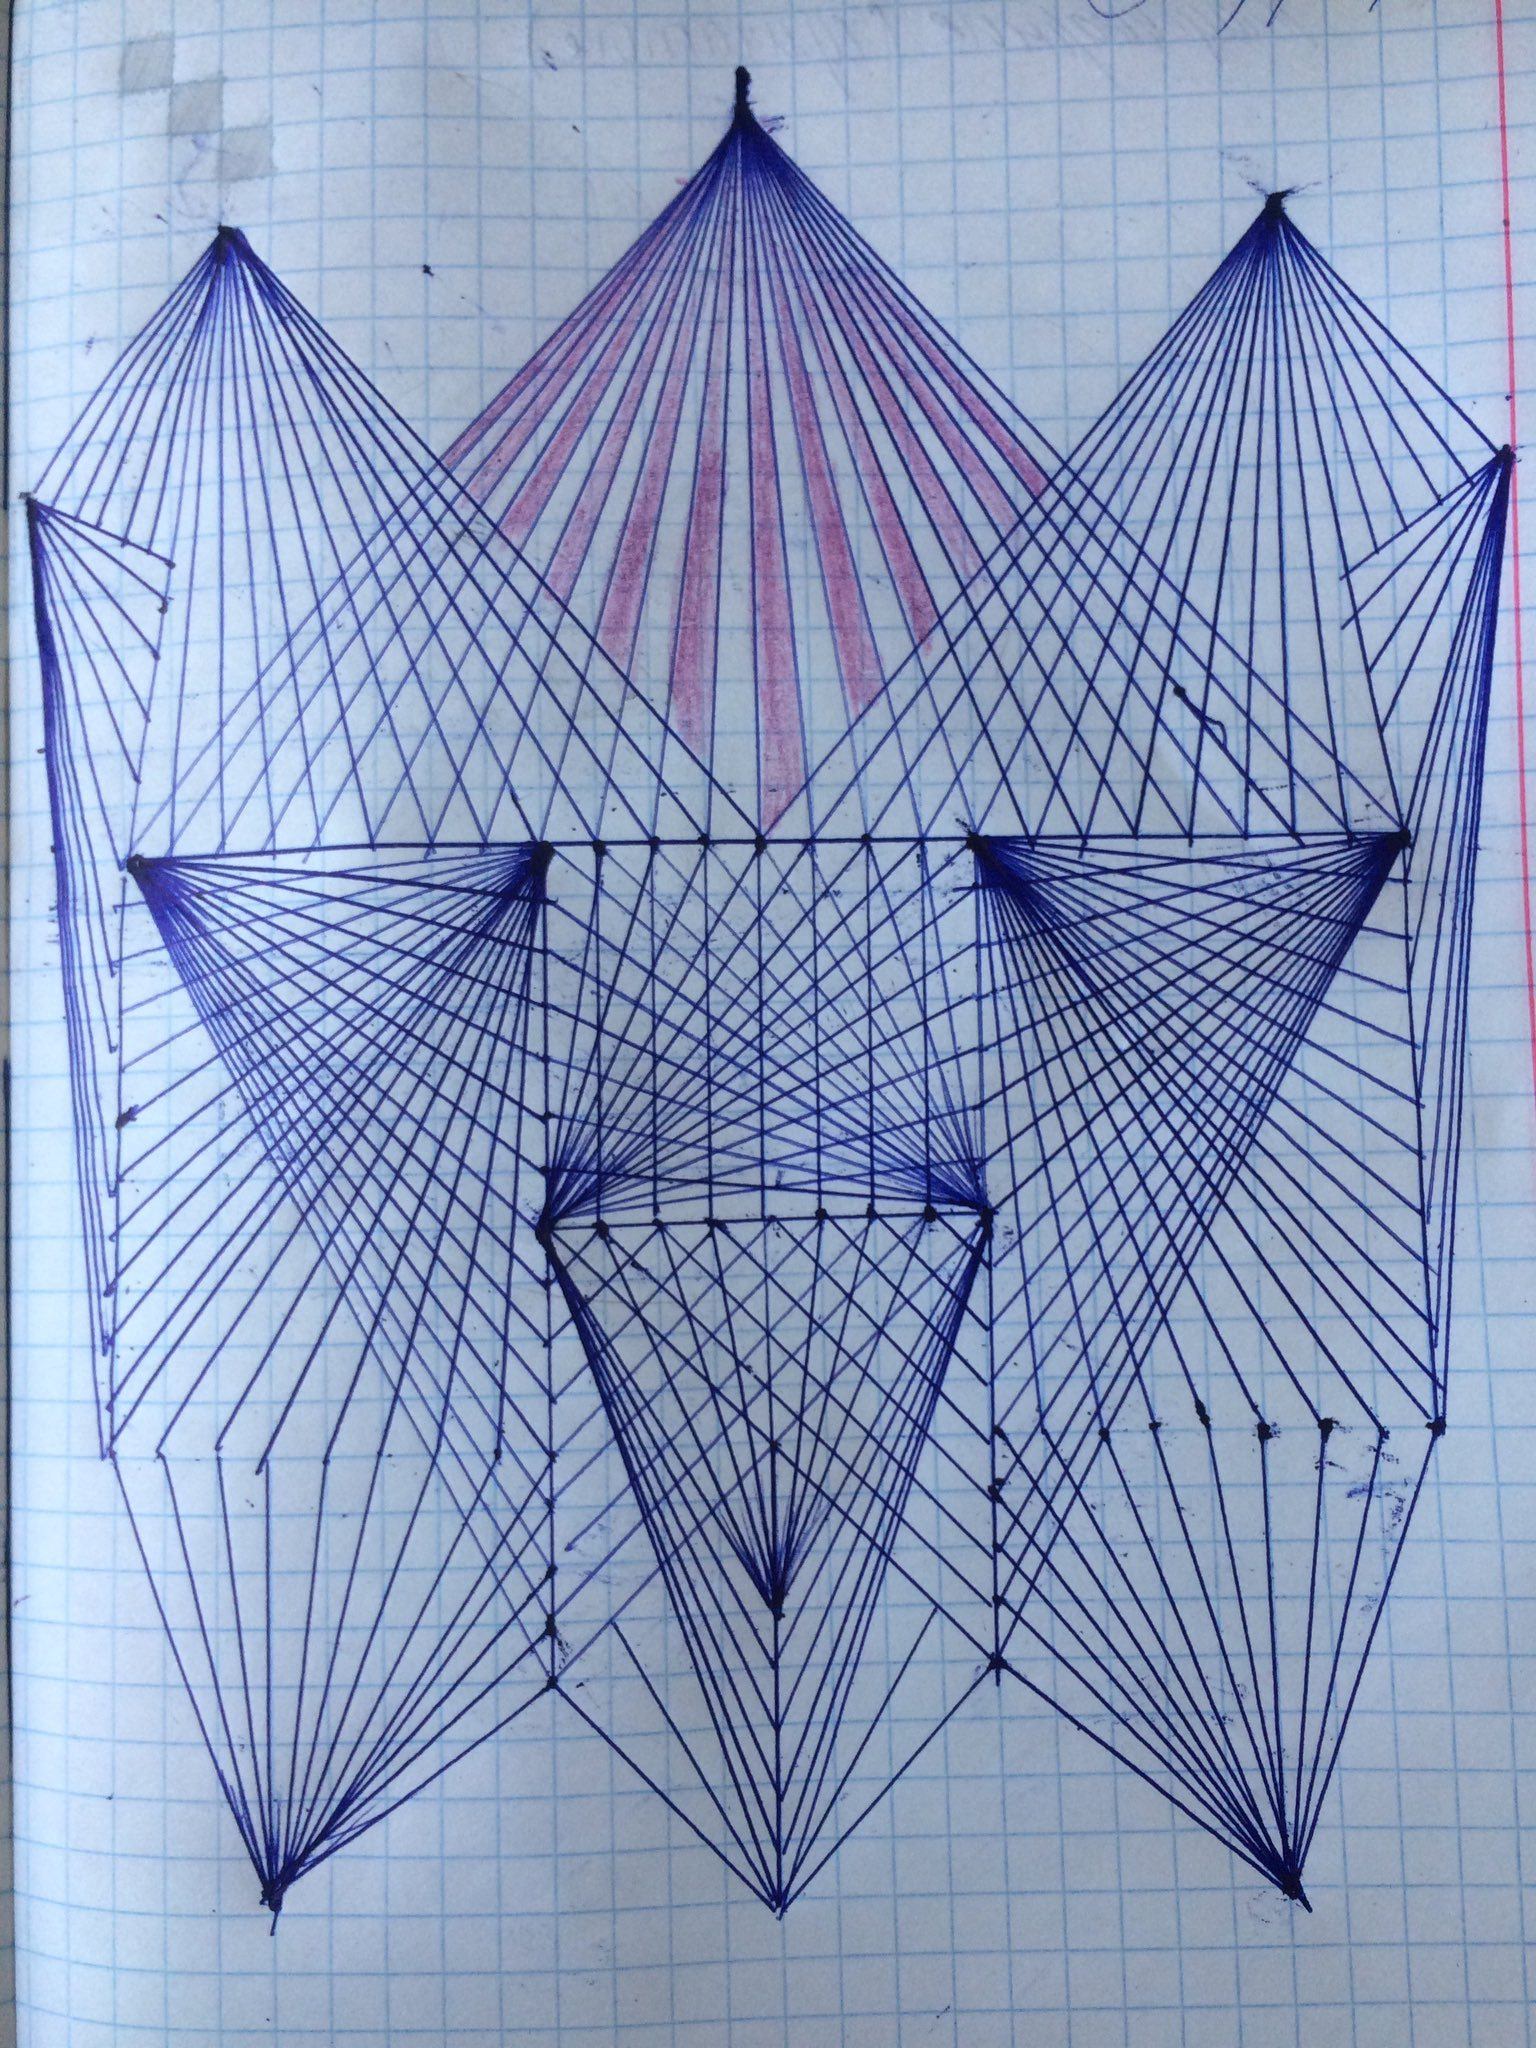 Геометрические фигуры прямые линии. Геометрические рисунки. Геометрические рисунки в тетради. Геометрические рисунки ручкой. Узоры геометрические в тетради ручкой.